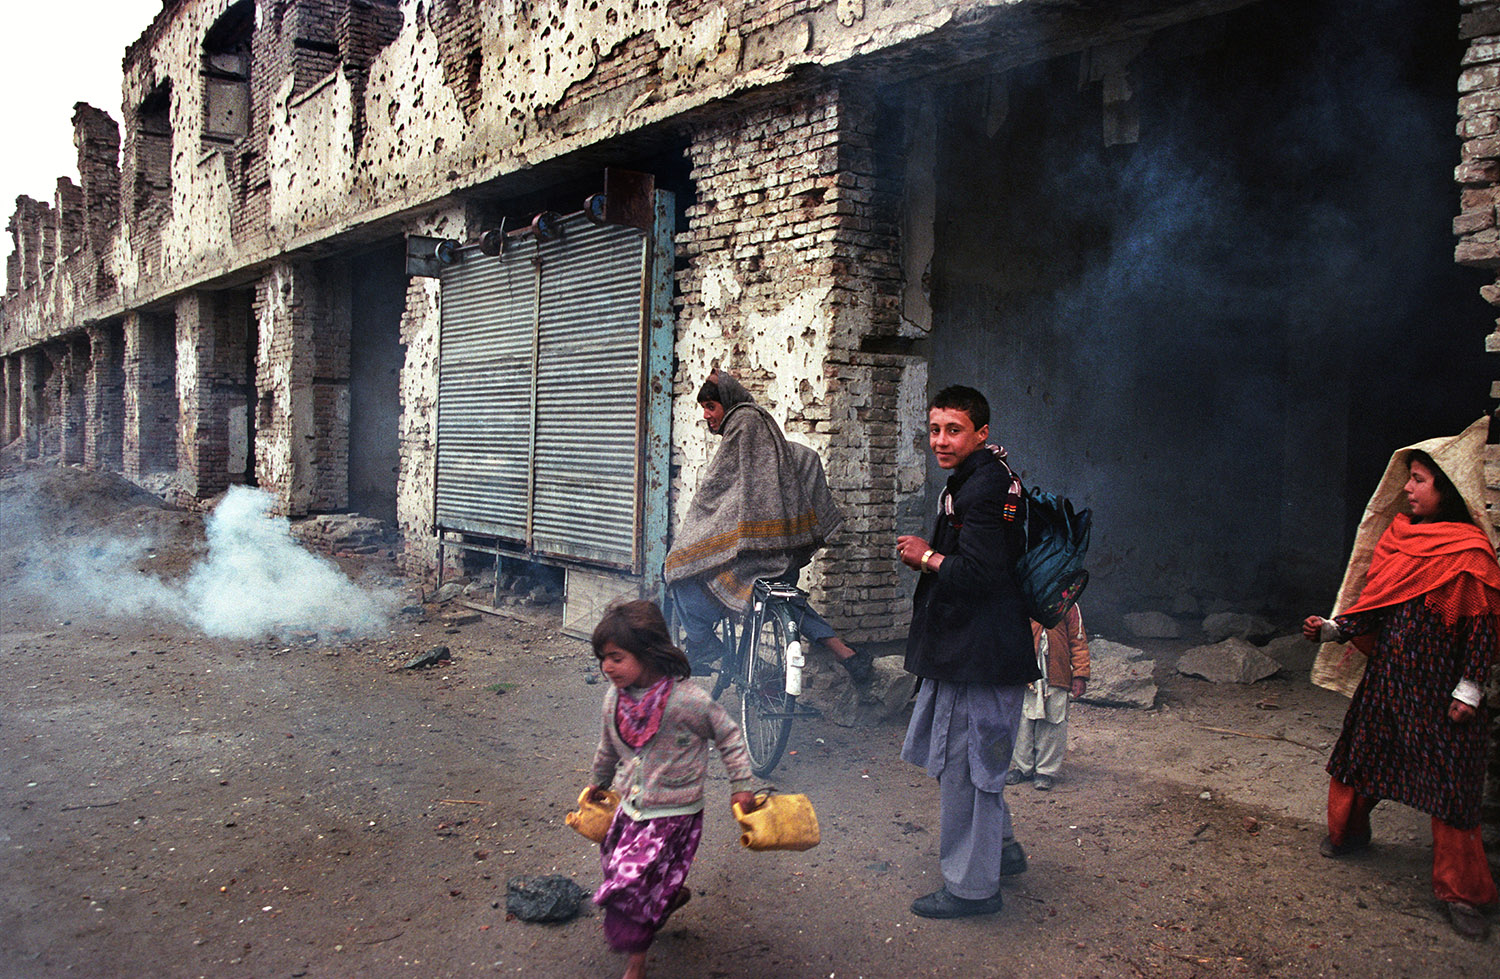 Dans une rue de Kaboul, les batiments sont presque en ruines. Il y a des enfants afghans dans la rue.